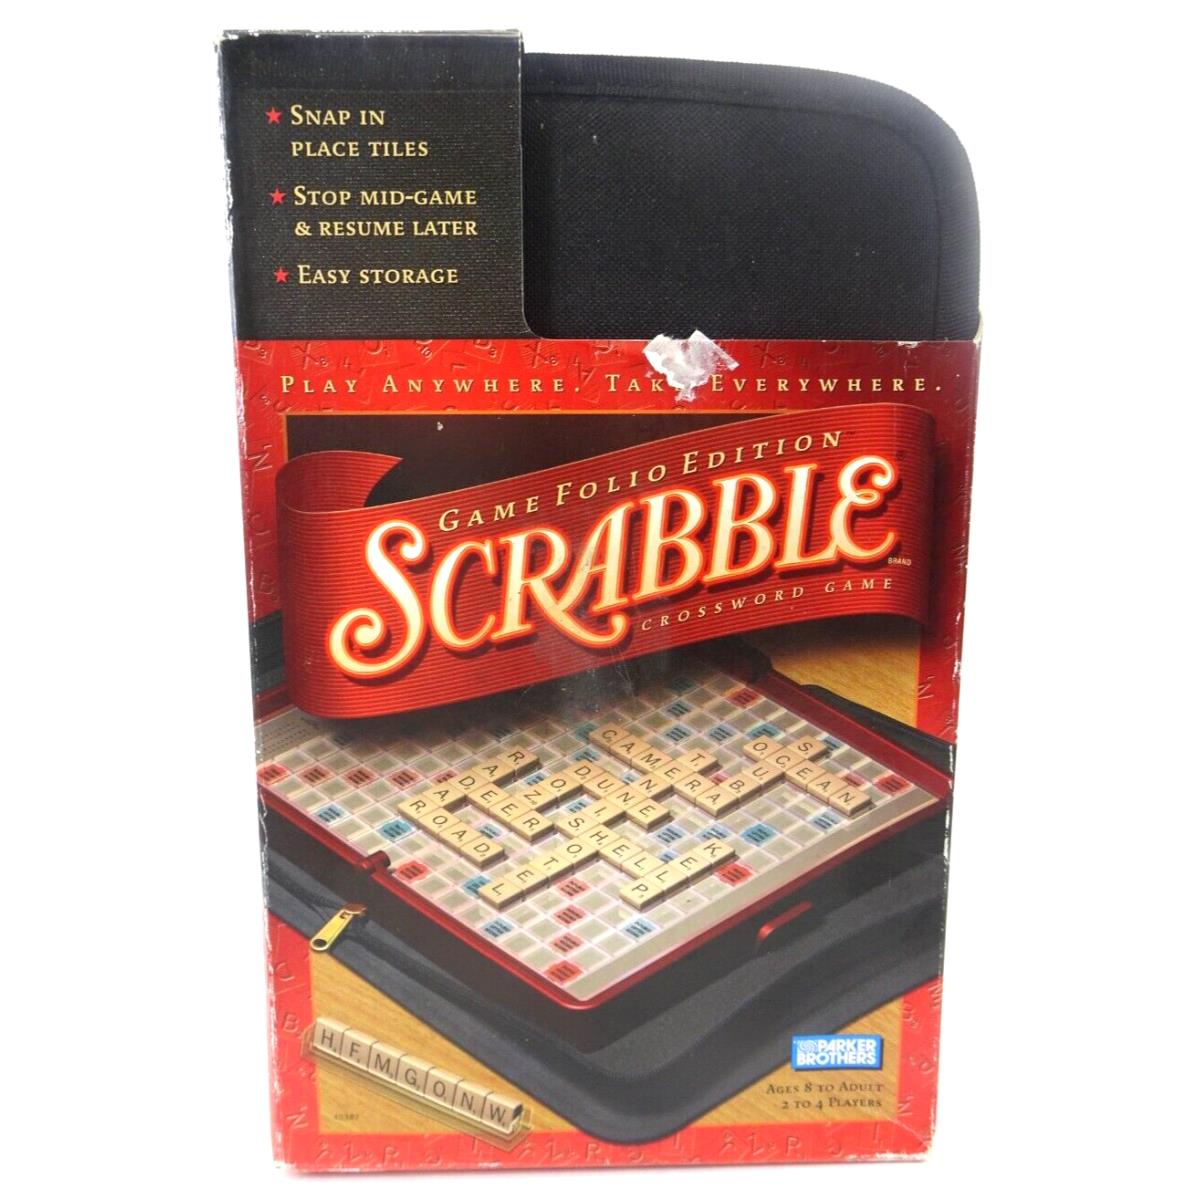 Scrabble Crossword Game Folio Edition w/ Zipper Case Travel 2001